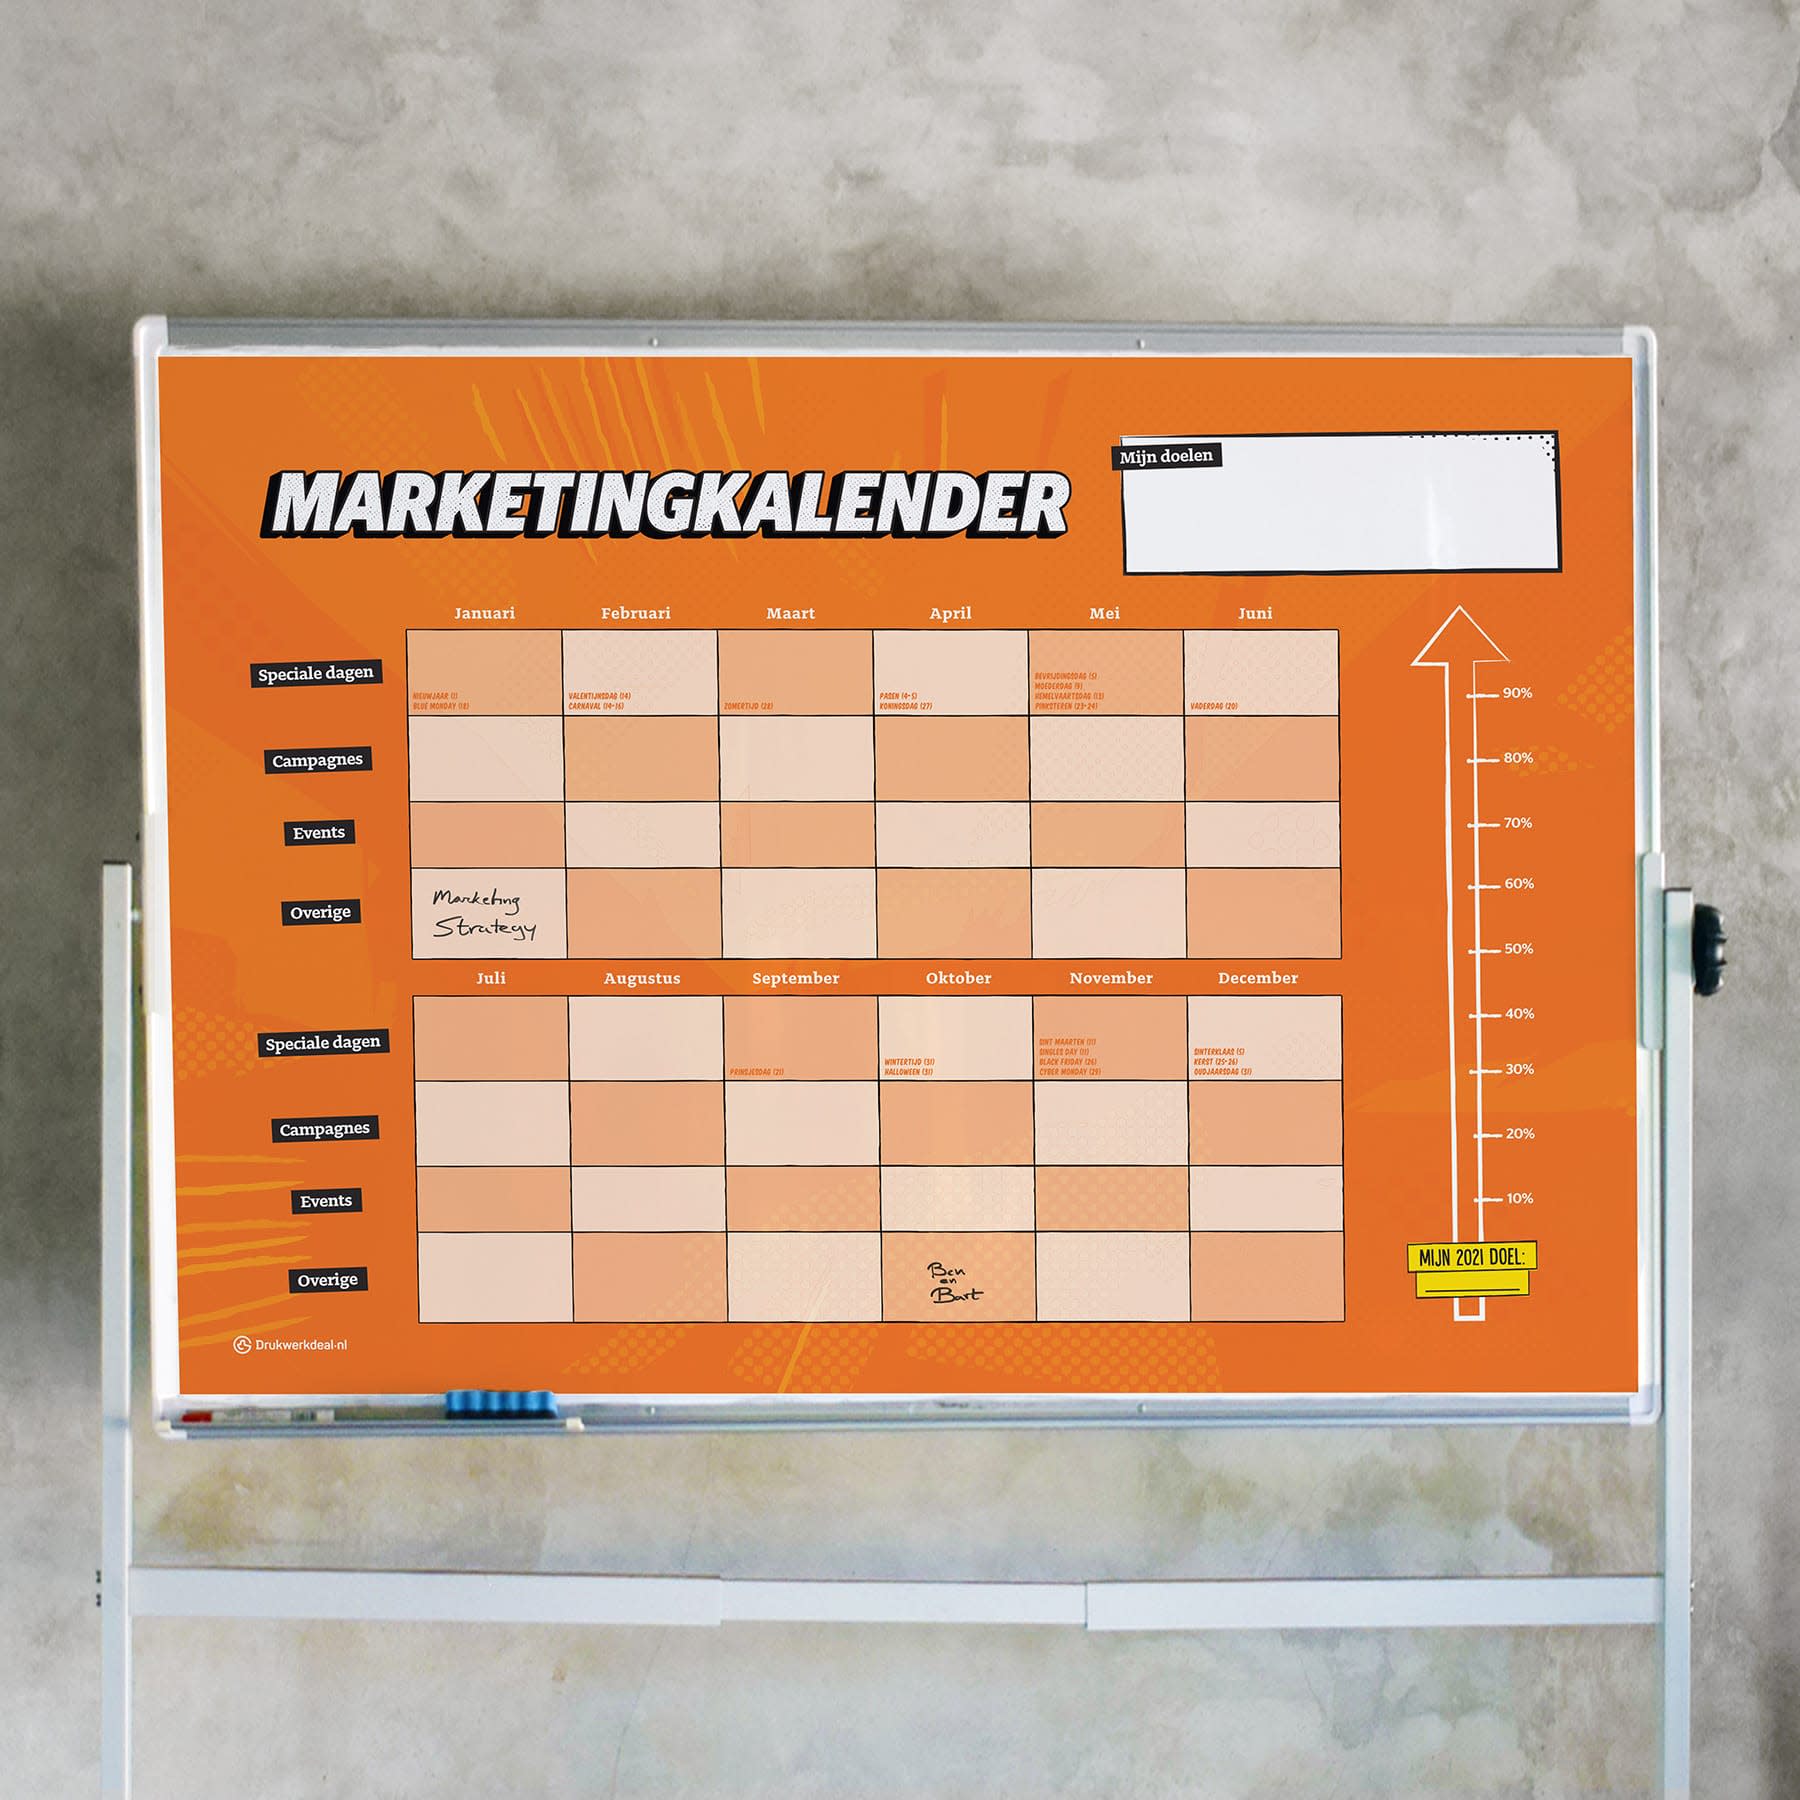 marketingkalender-whiteboardsticker